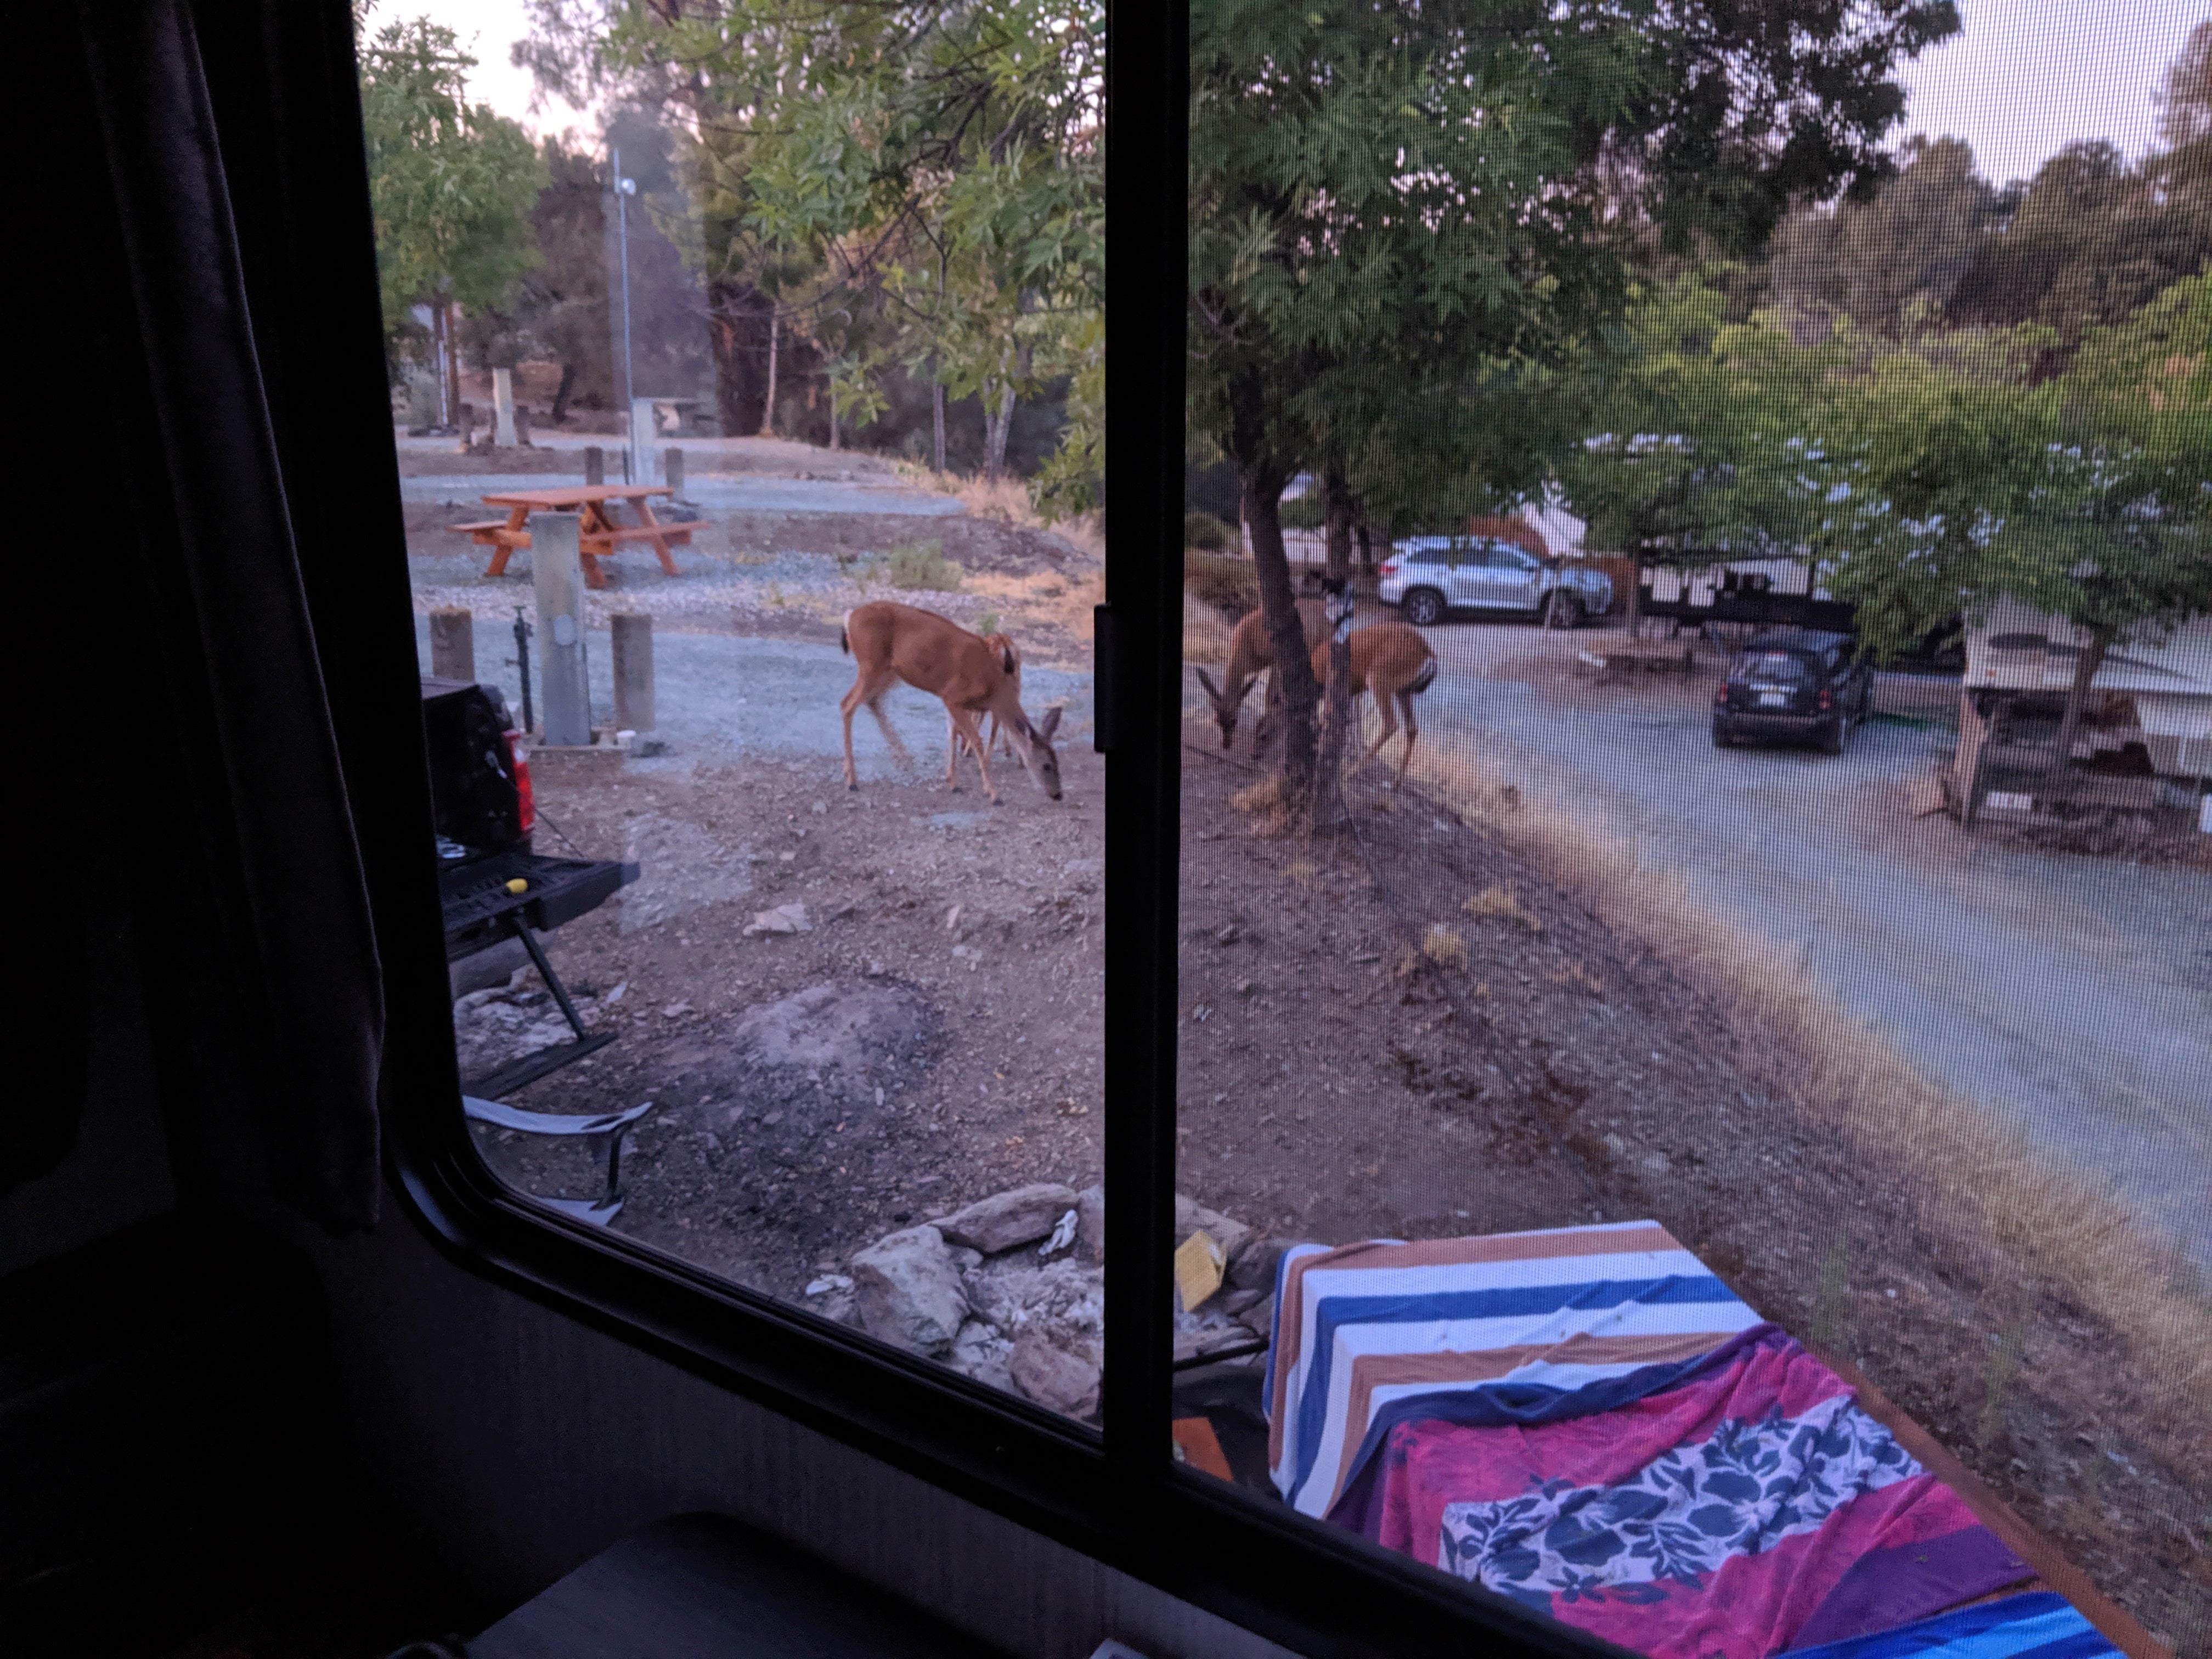 Deer outside our trailer.